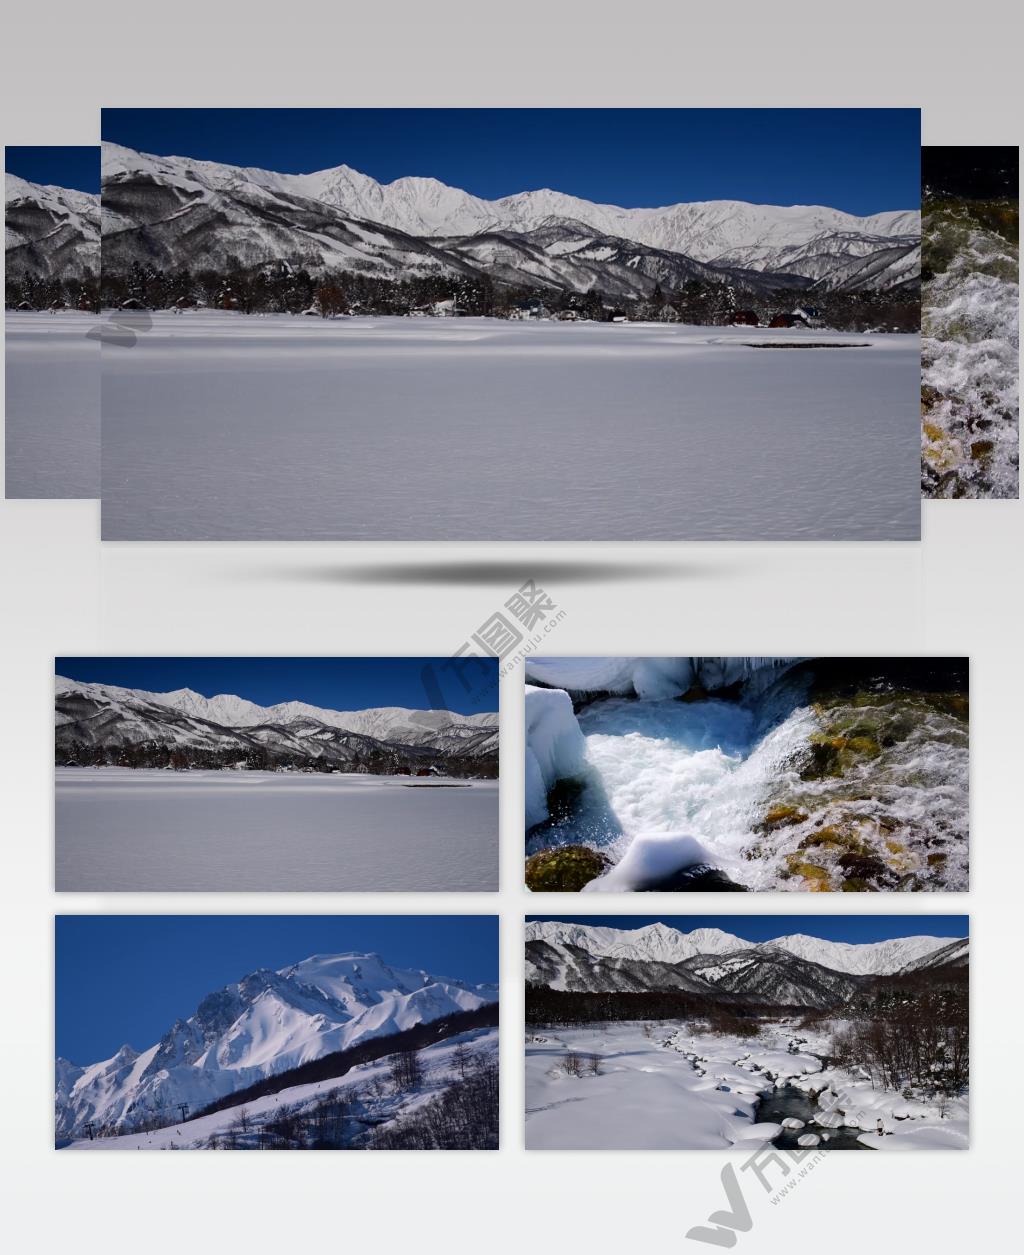 ［4K］ 高原雪景4 4K片源 超高清实拍视频素材 自然风景山水花草树木瀑布超清素材